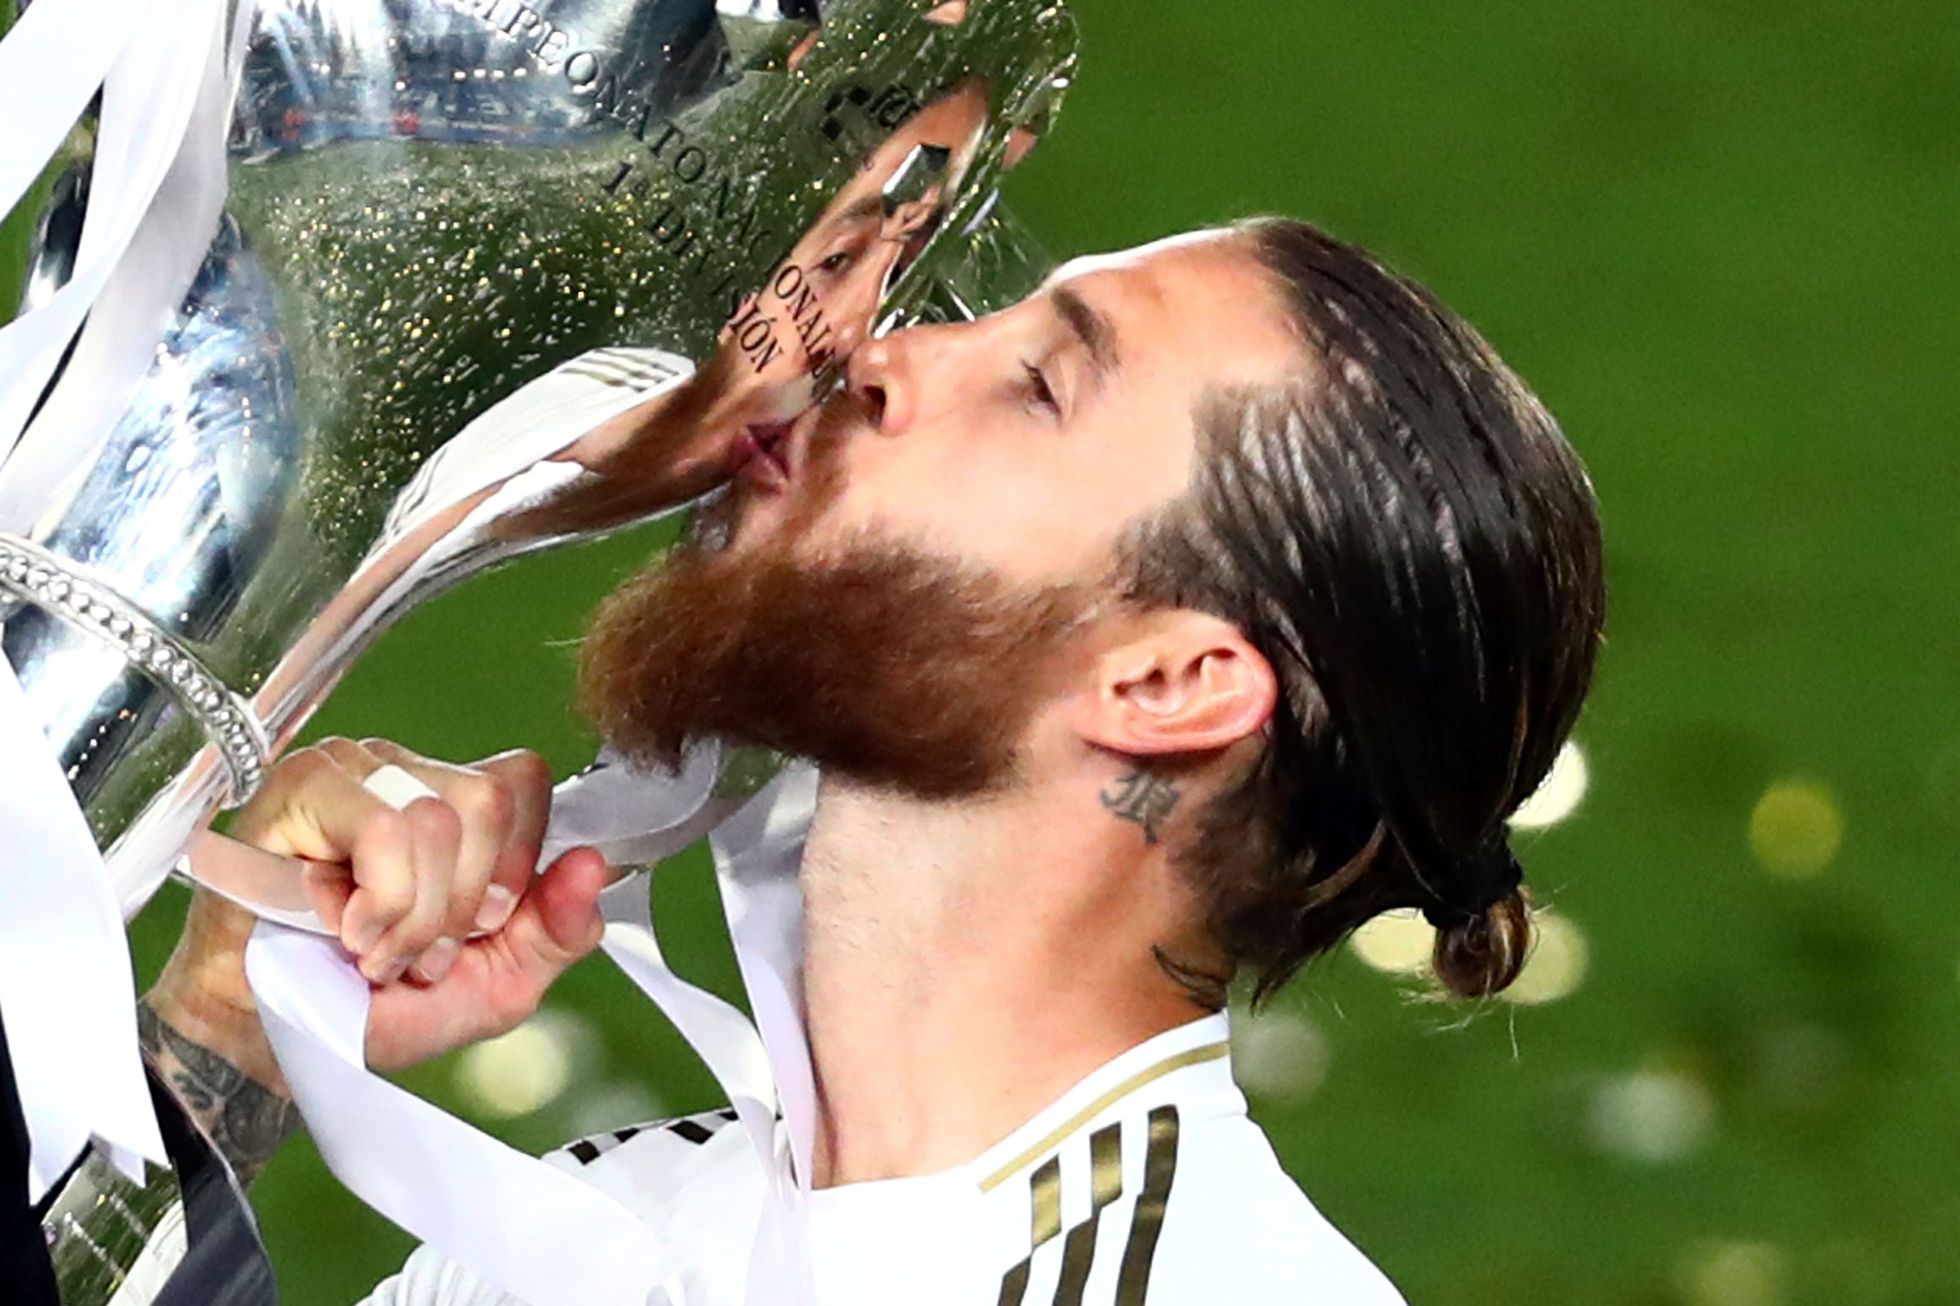 Real Madrid slaví zisk 34. titulu ve španělské lize, Sergio Ramos